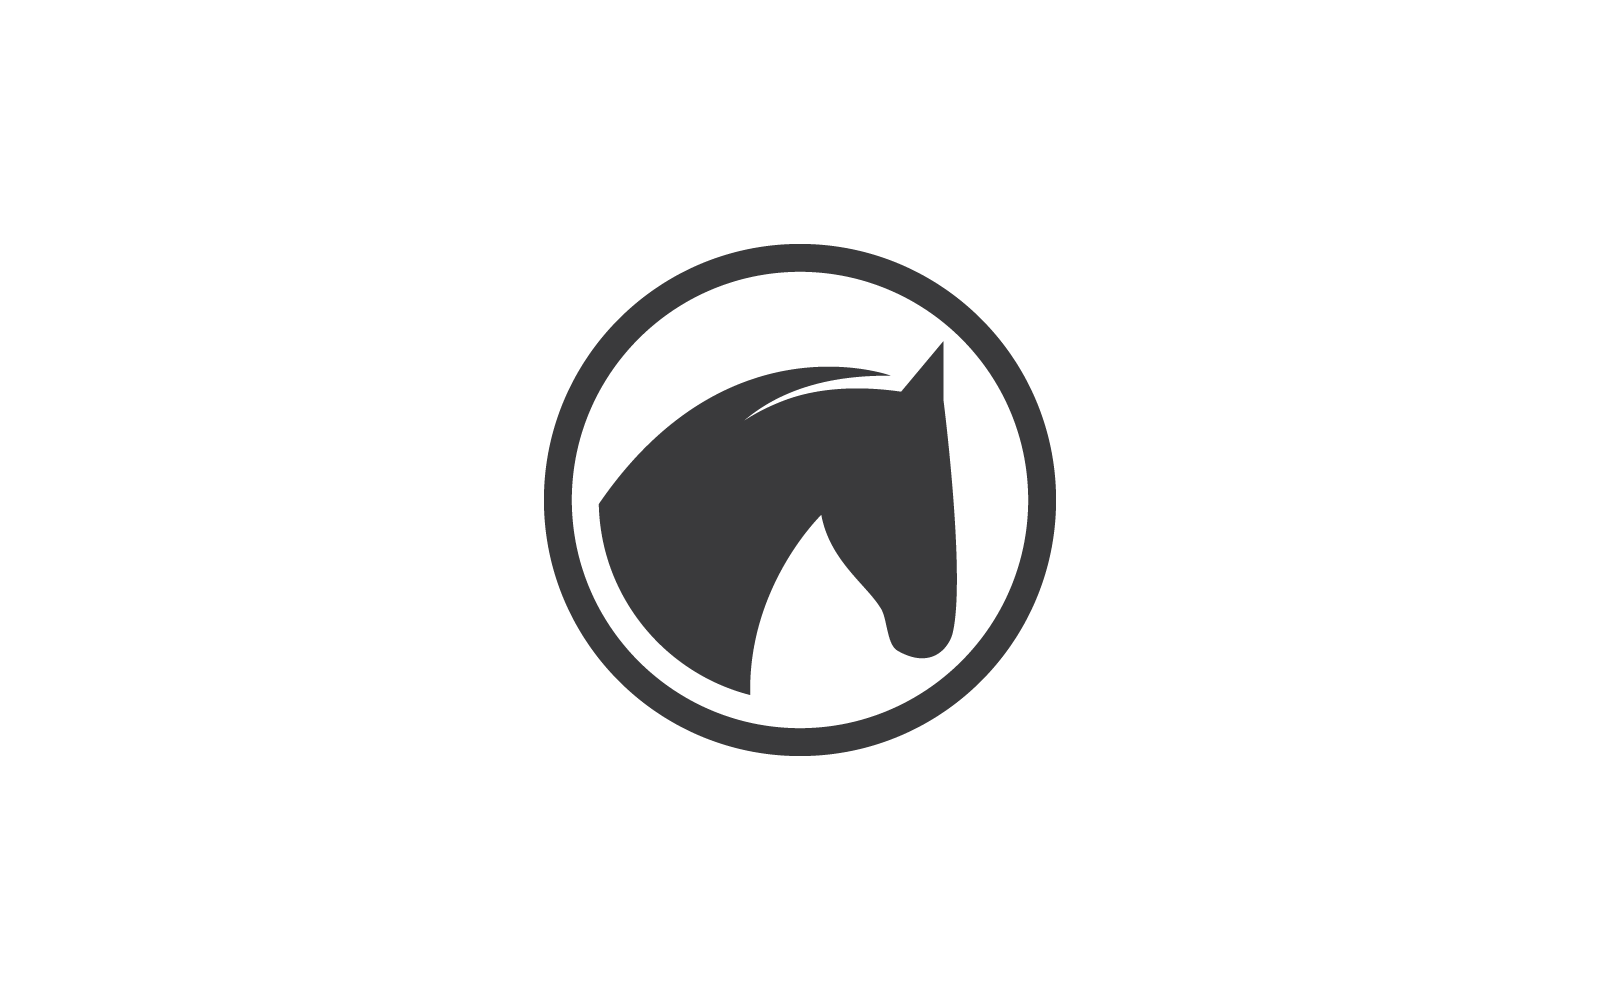 Pferd-Logo, Vektorgrafik, flaches Design, Illustrationsvorlage